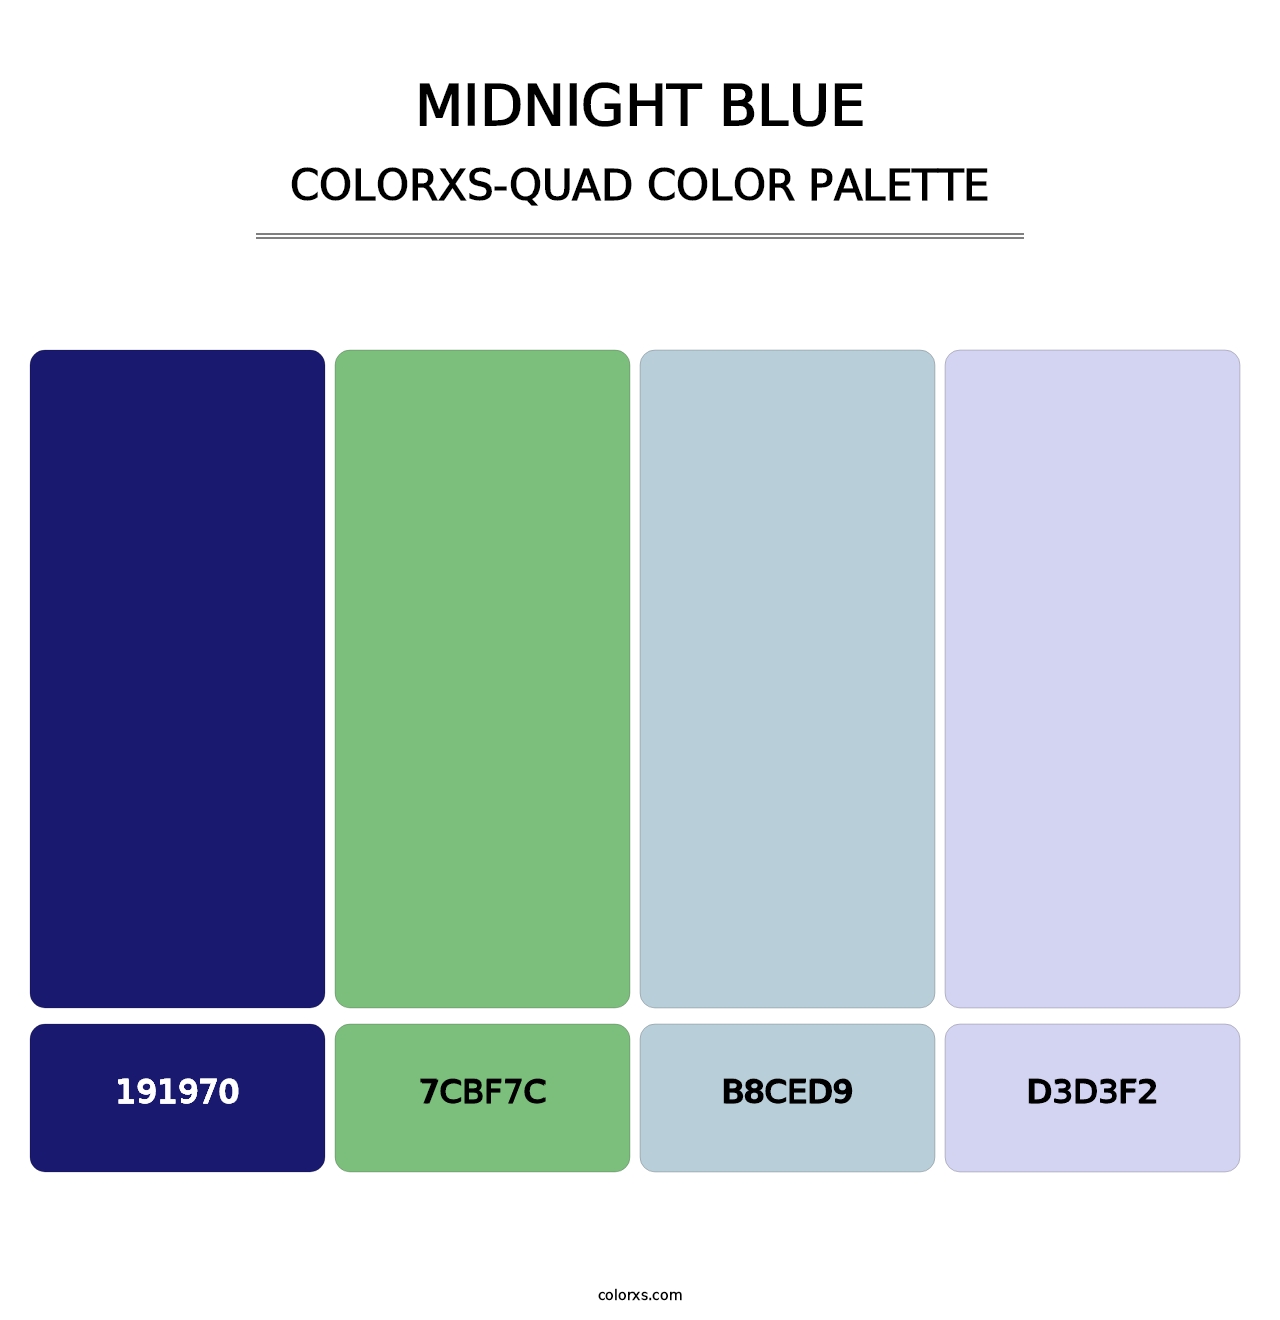 Midnight Blue - Colorxs Quad Palette